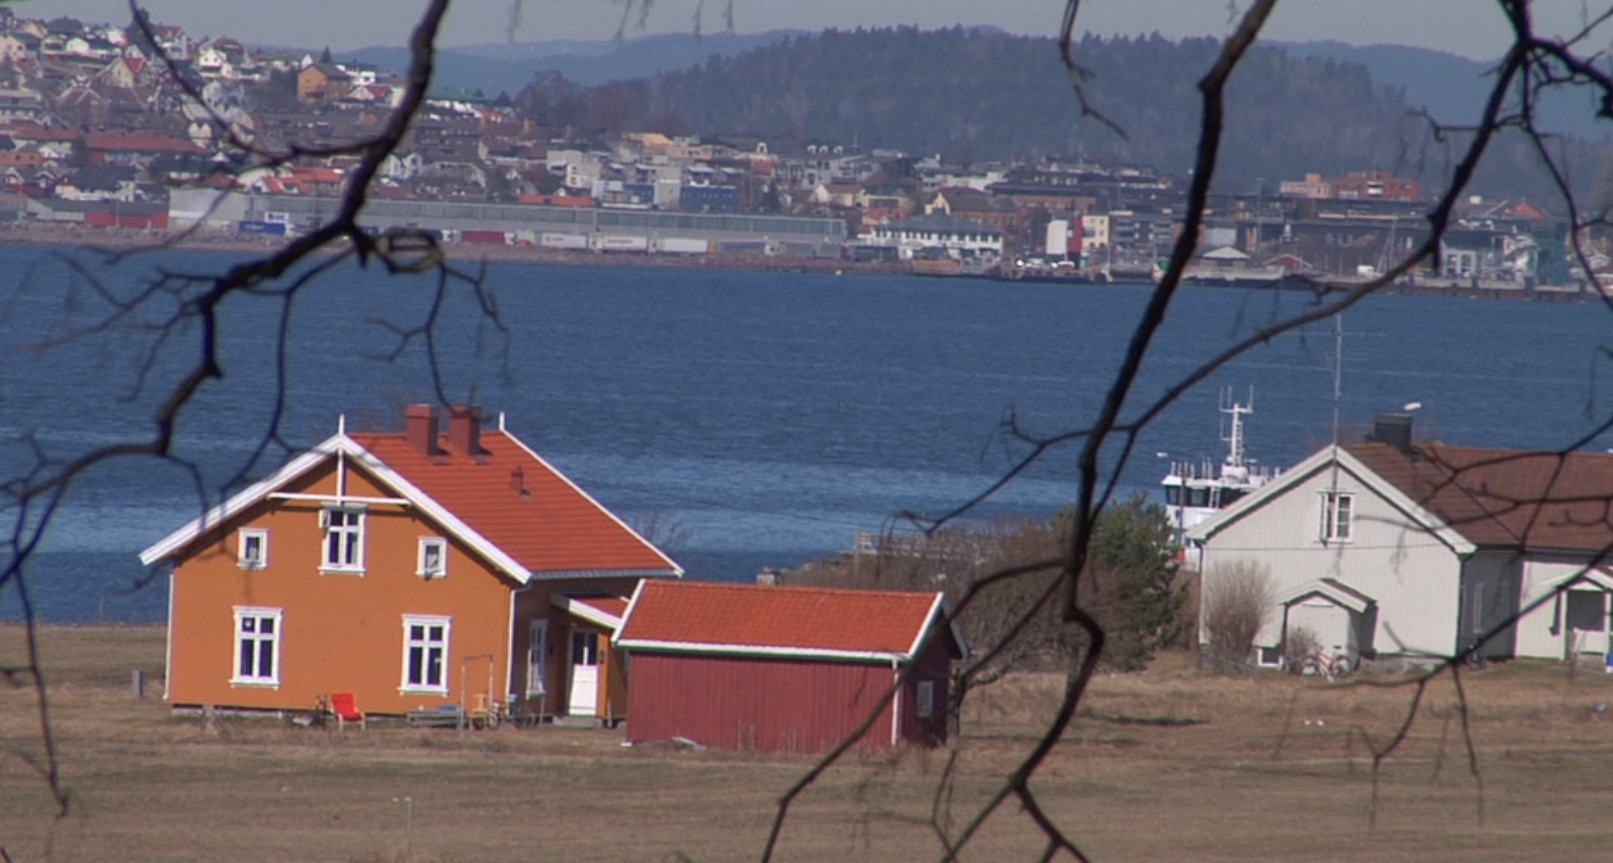 Έτσι σωφρονίζουν τους βιαστές στις «Φυλακές Κορυδαλλού» της Νορβηγίας [εικόνες, βίντεο]